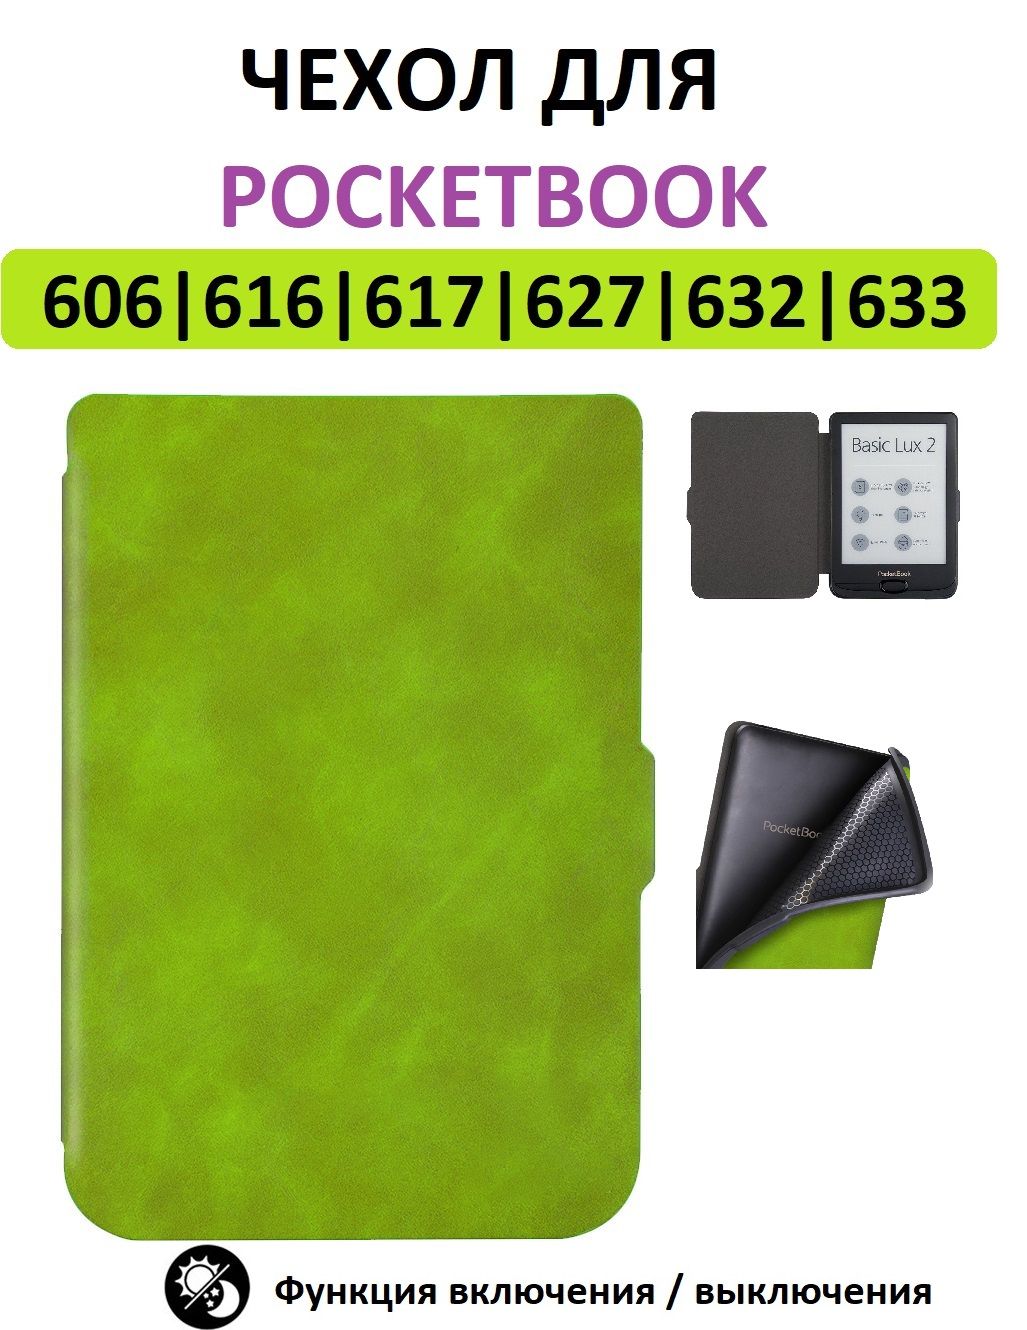 Pocketbook 628 Чехол